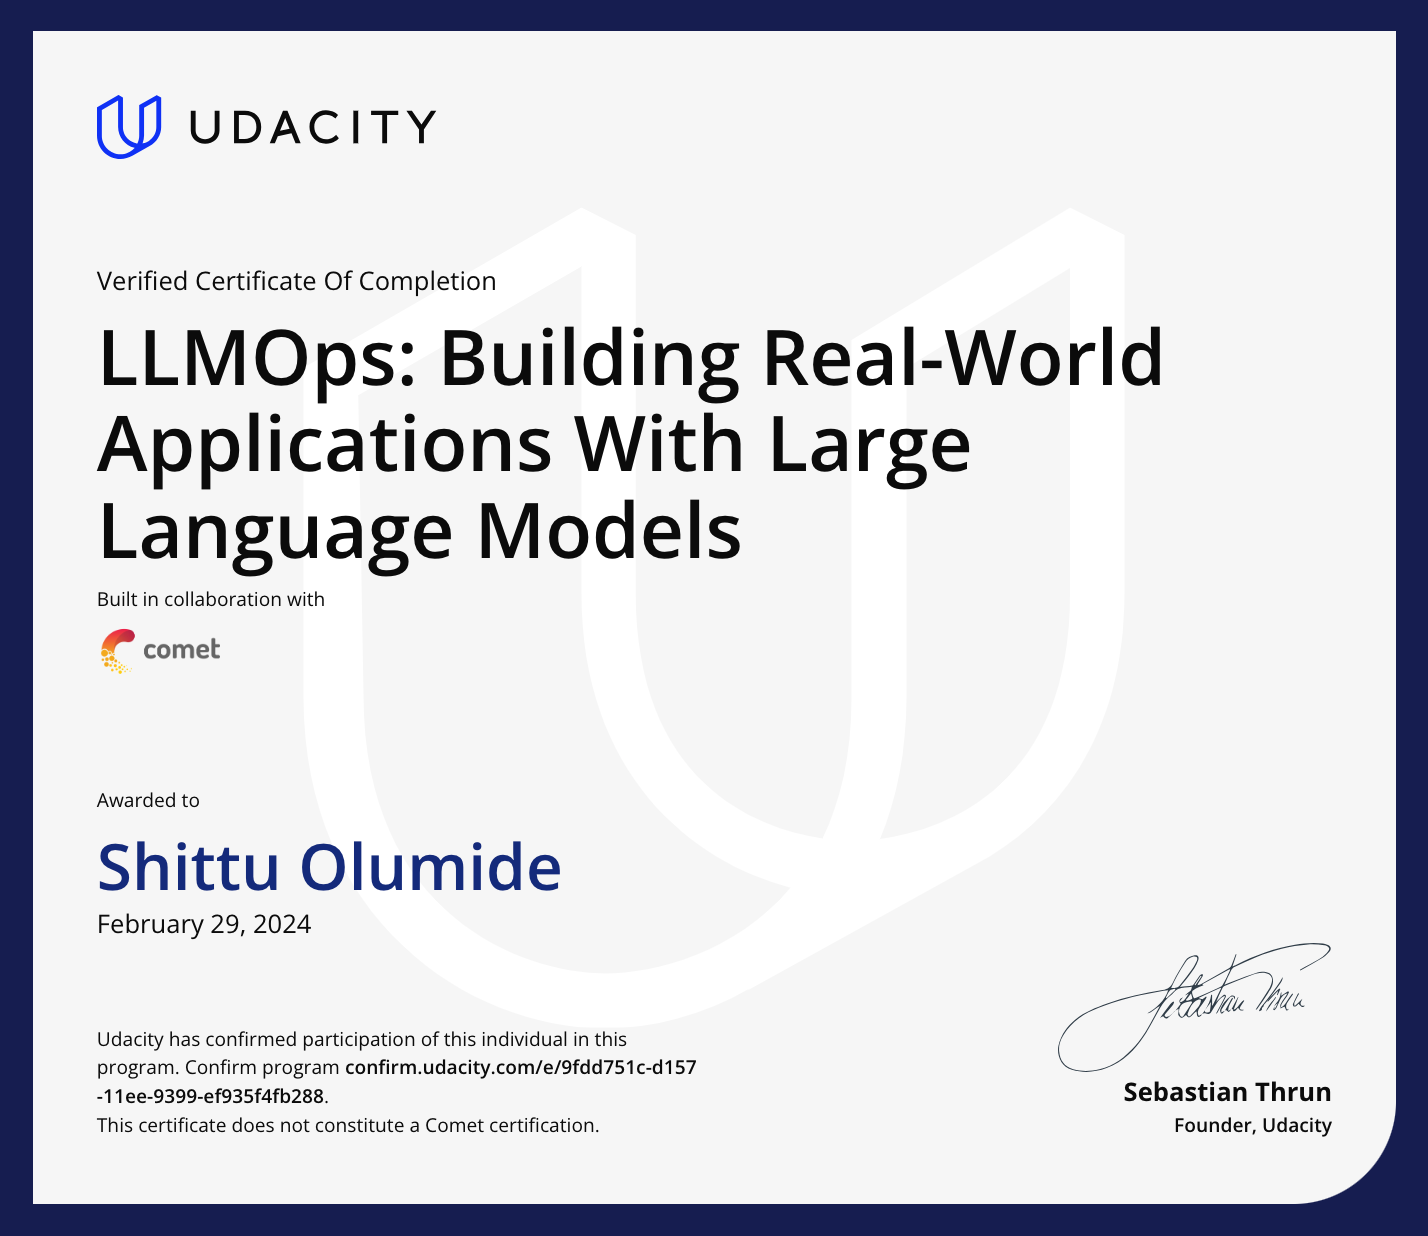 Shittu Olumide Udacity certificate